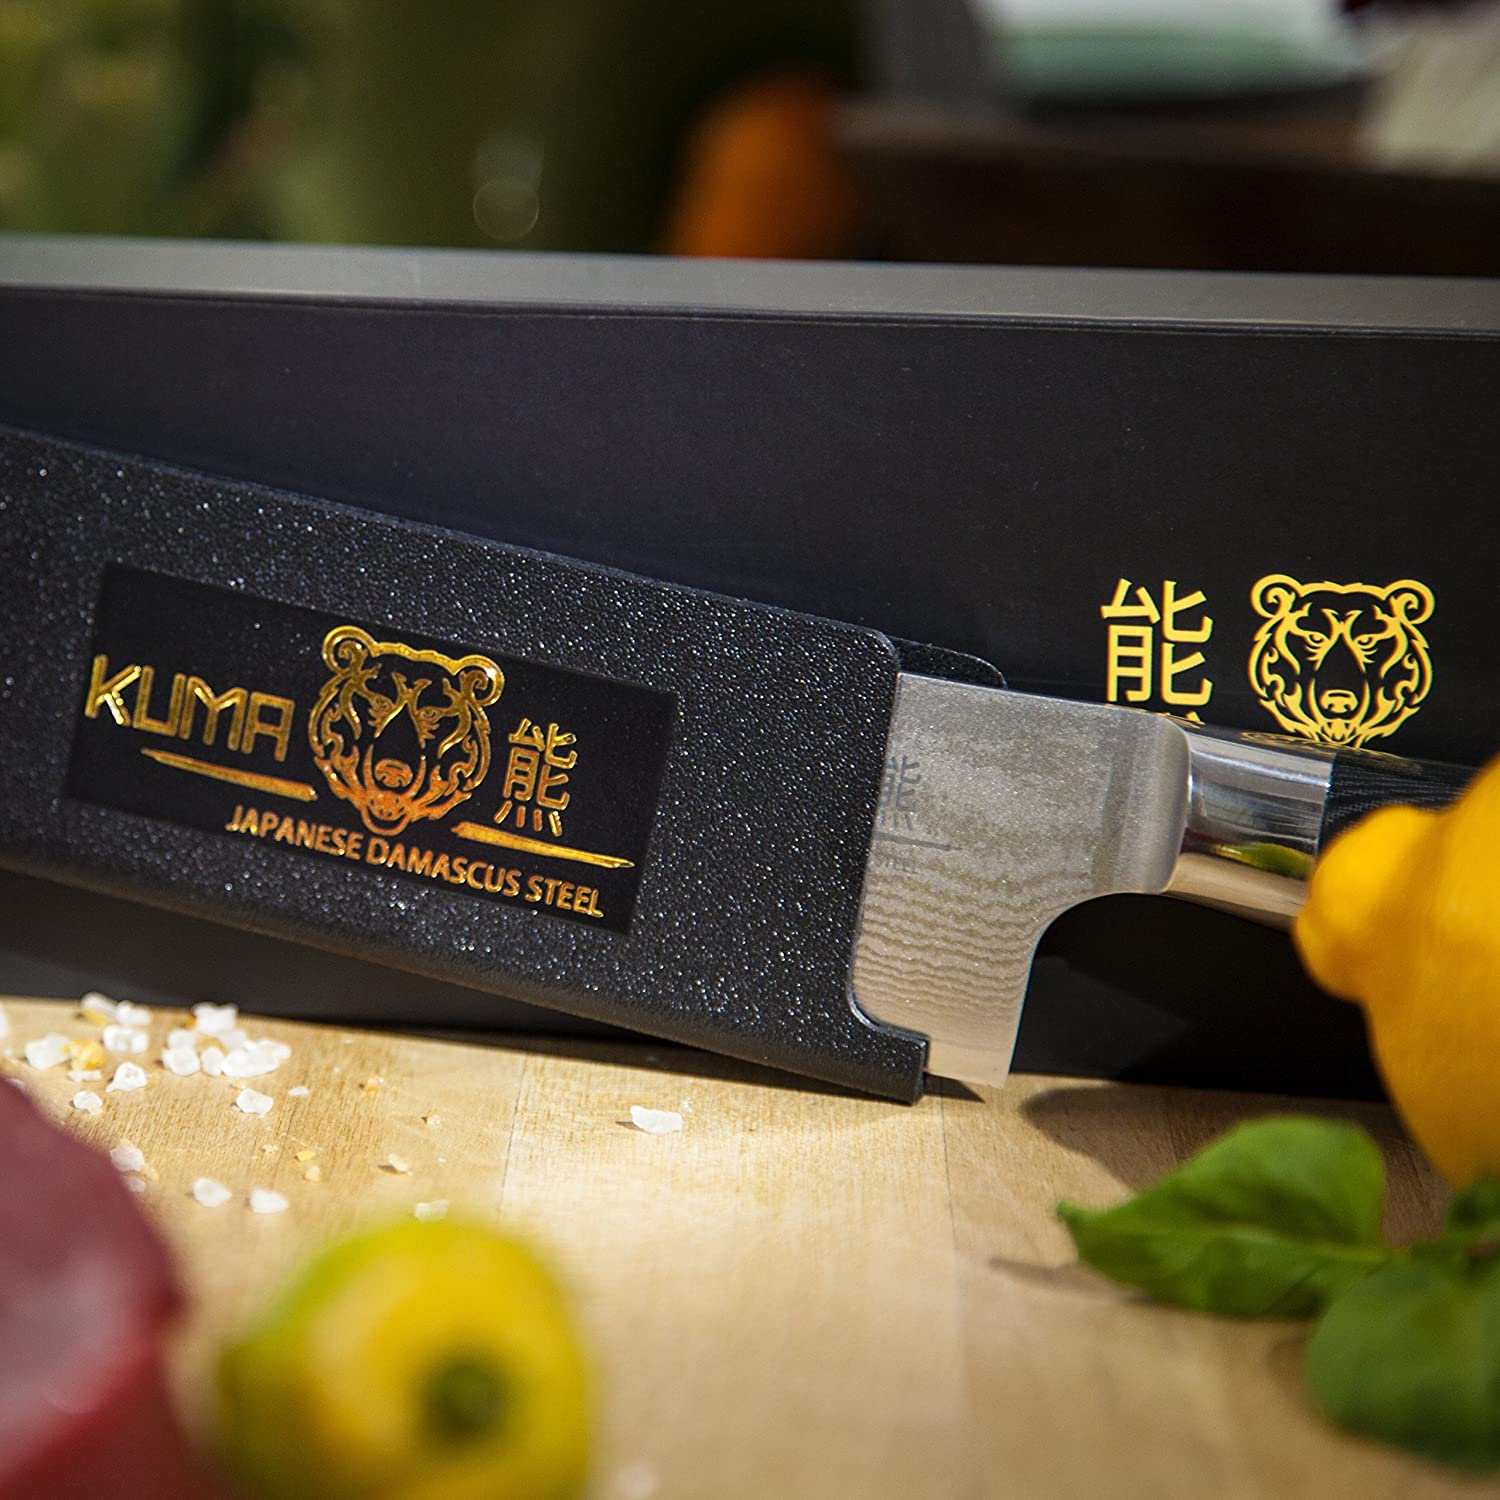 KUMA Professional 다마스커스 스틸 나이프 - 경화 된 일본 탄소강으로 된 8 인치 주방 칼 - 얼룩 및 부식 방지 블레이드 - 균형 잡힌 인체 공학적 손잡이 및 칼집 - 안전하고 쉬운 식사 준비